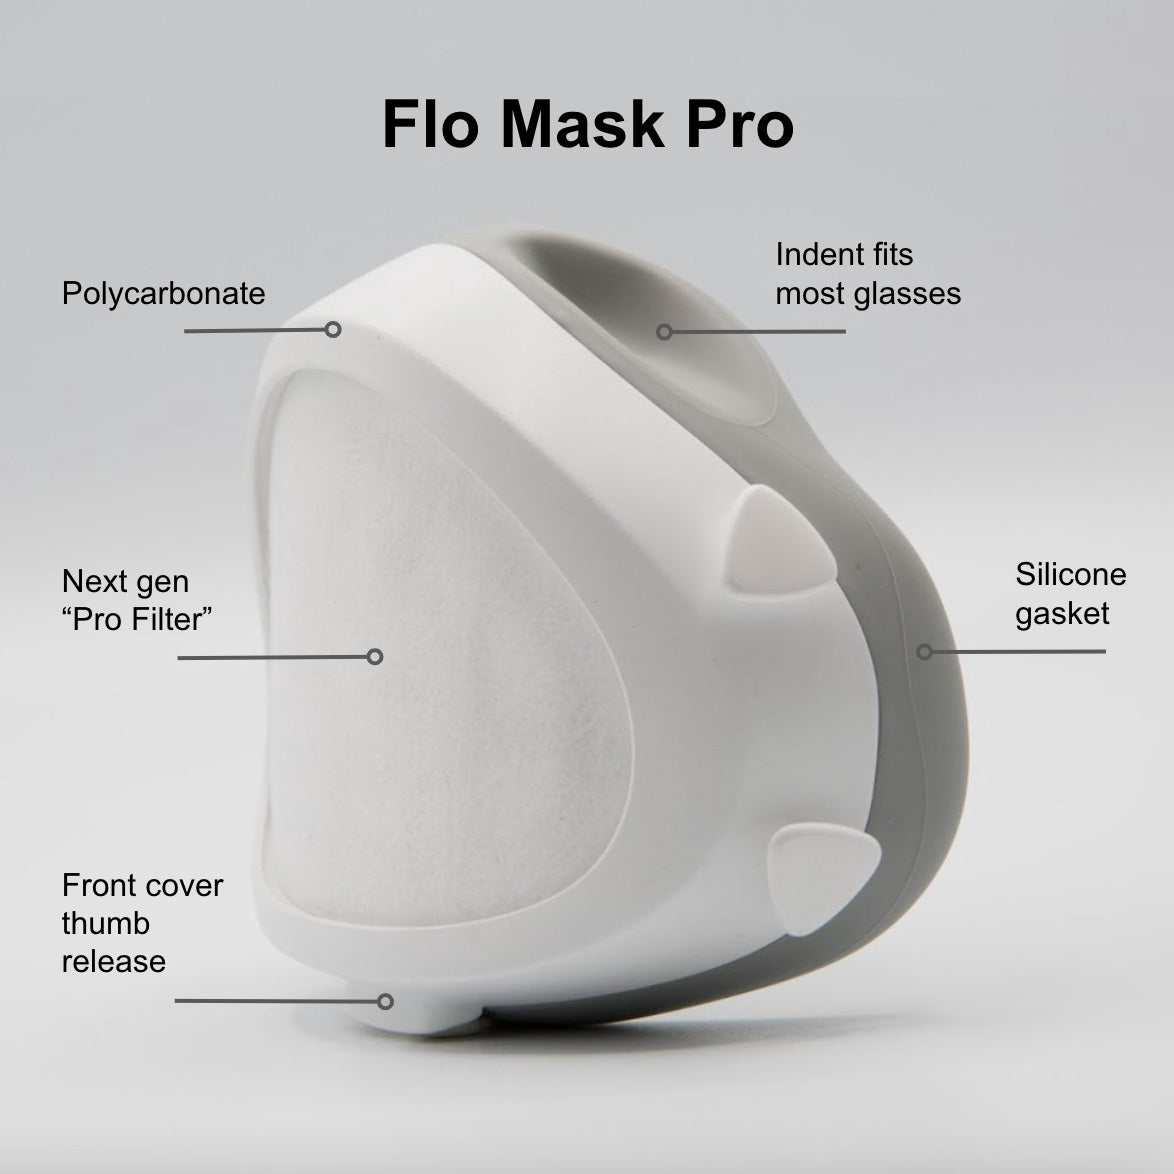 Flo Mask Pro (Adult Mask)